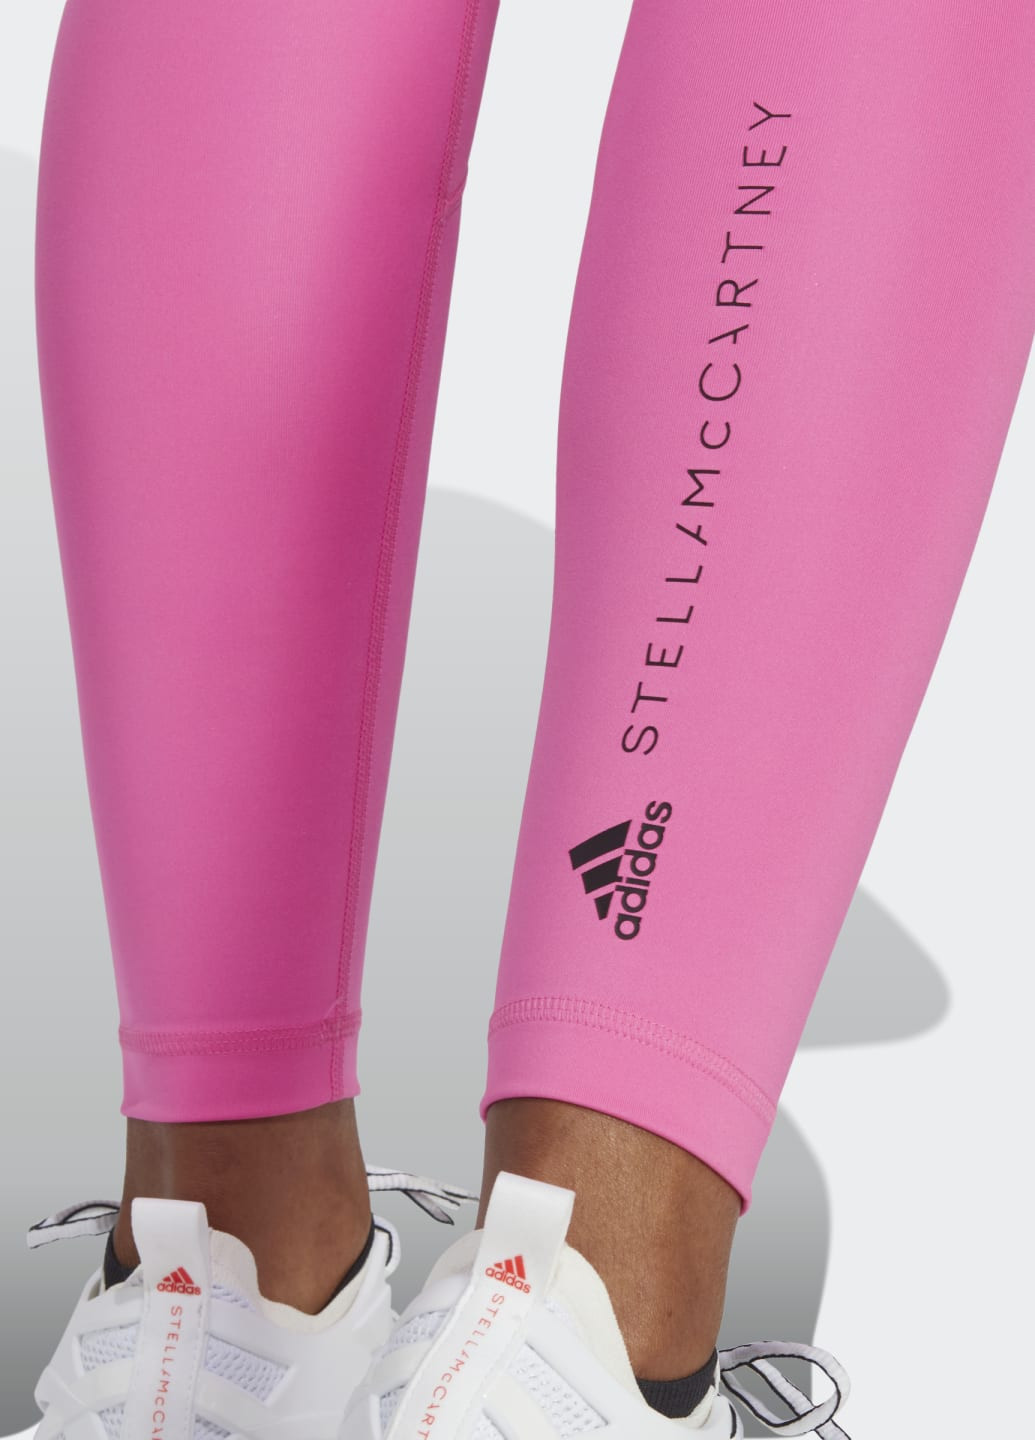 Розовые демисезонные леггинсы для фитнеса by stella mccartney truepurpose adidas